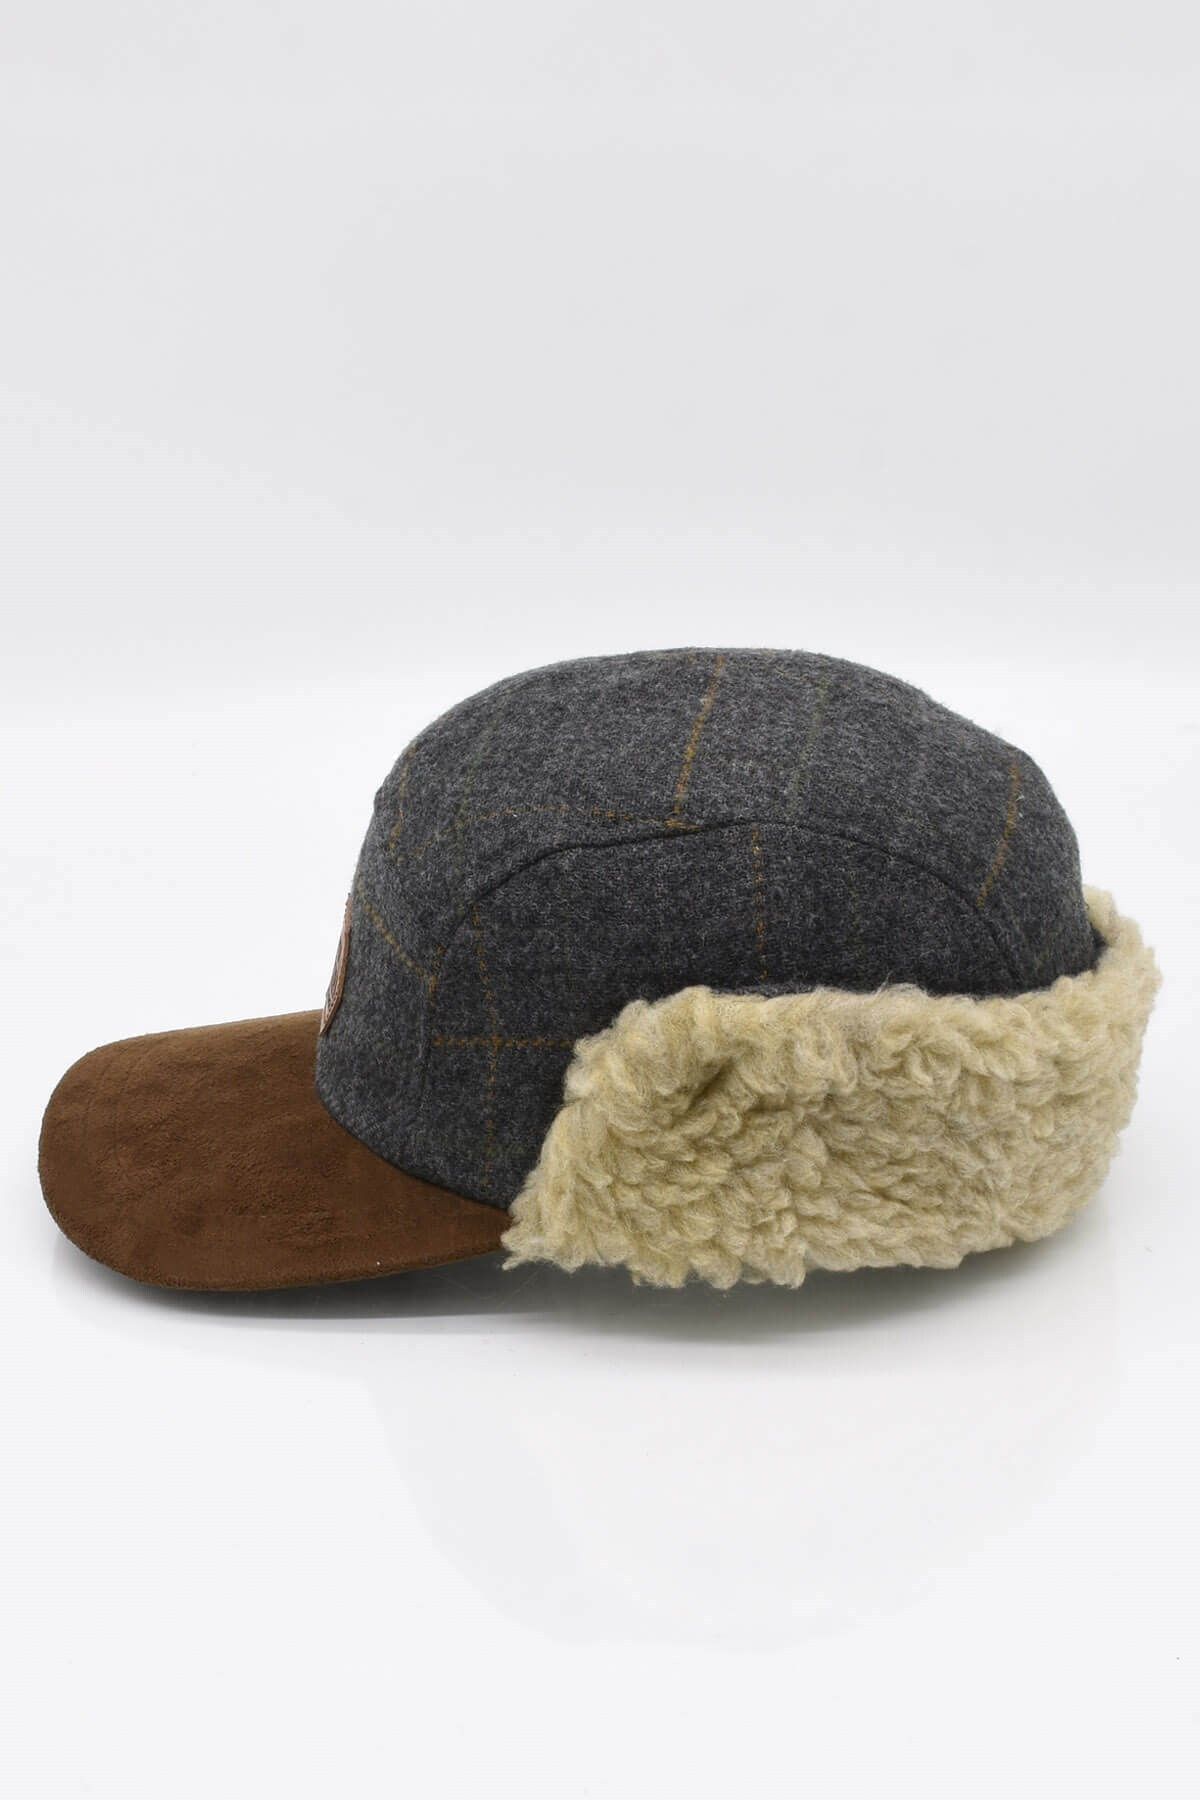 Külah Erkek Süet Siperli Kürklü Kışlık Kep Şapka 55-57cm